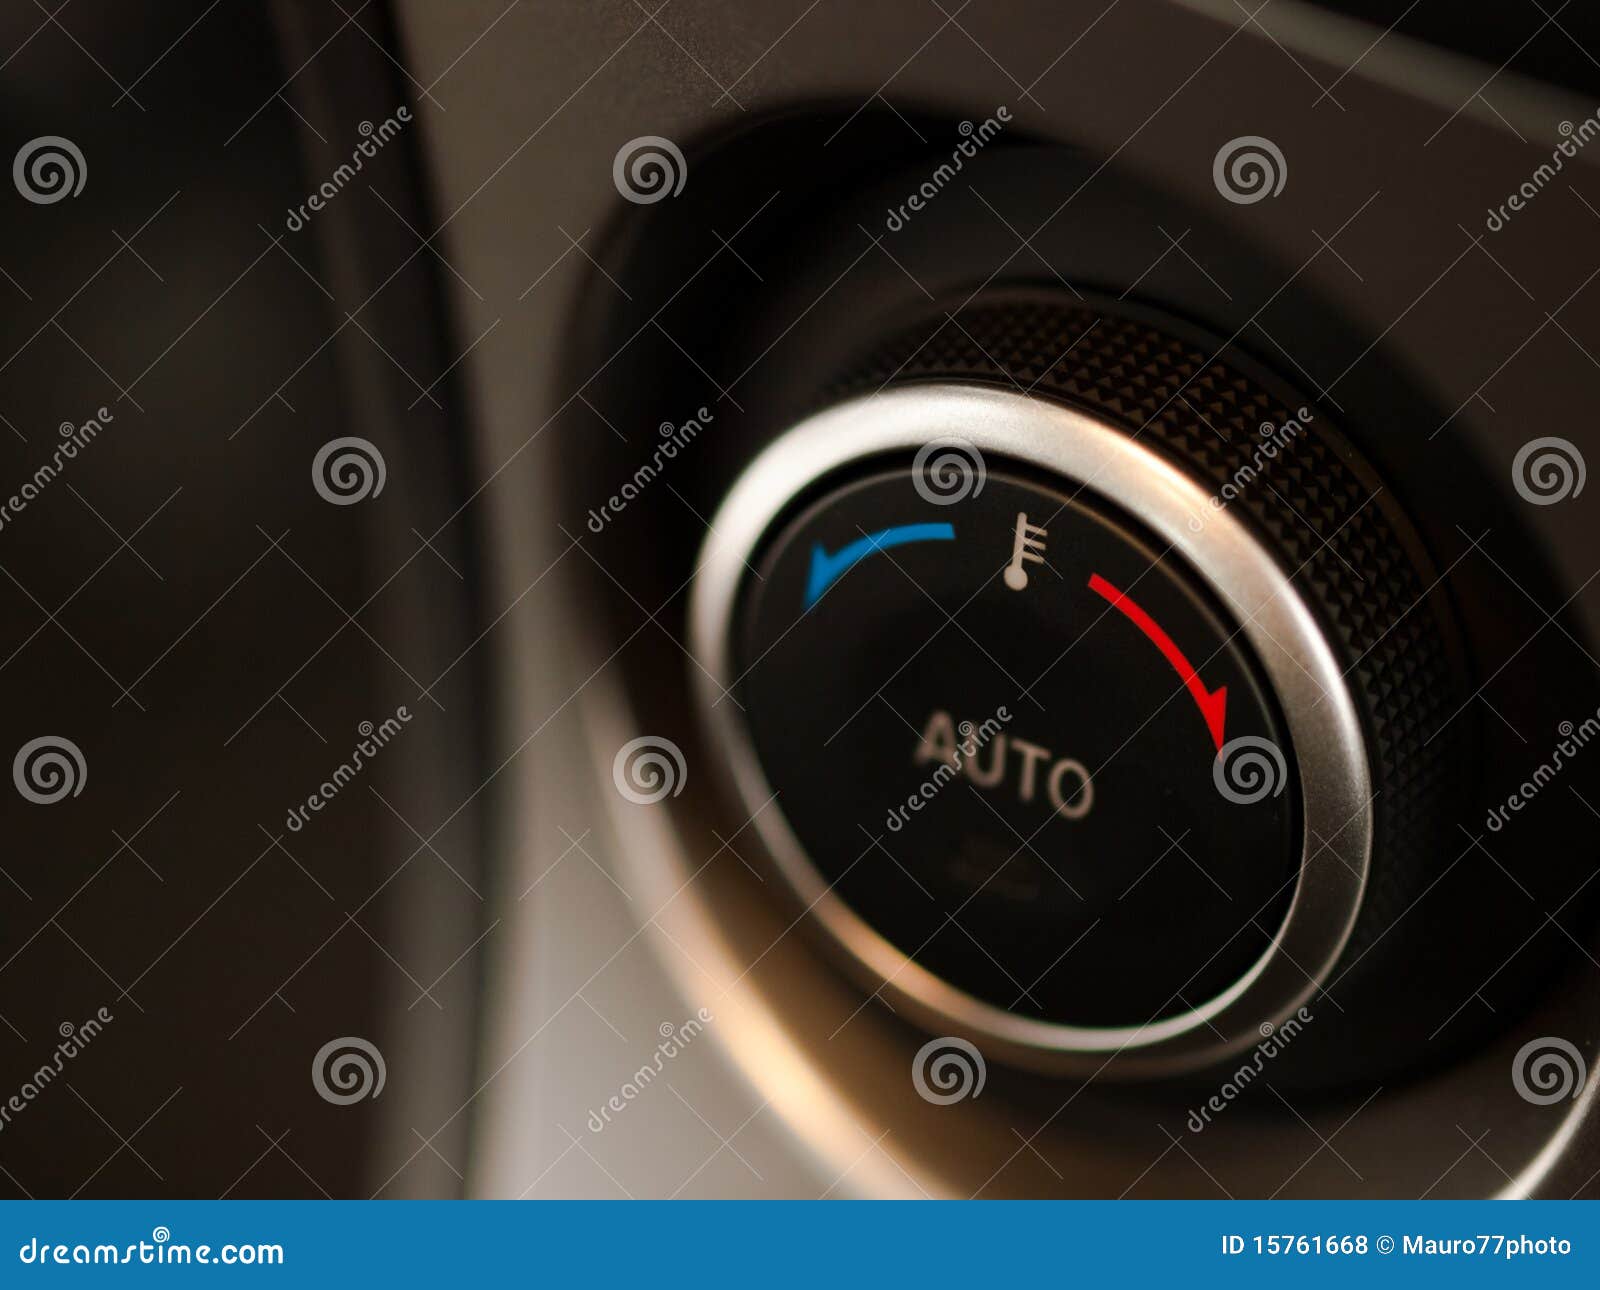 car temperature knob